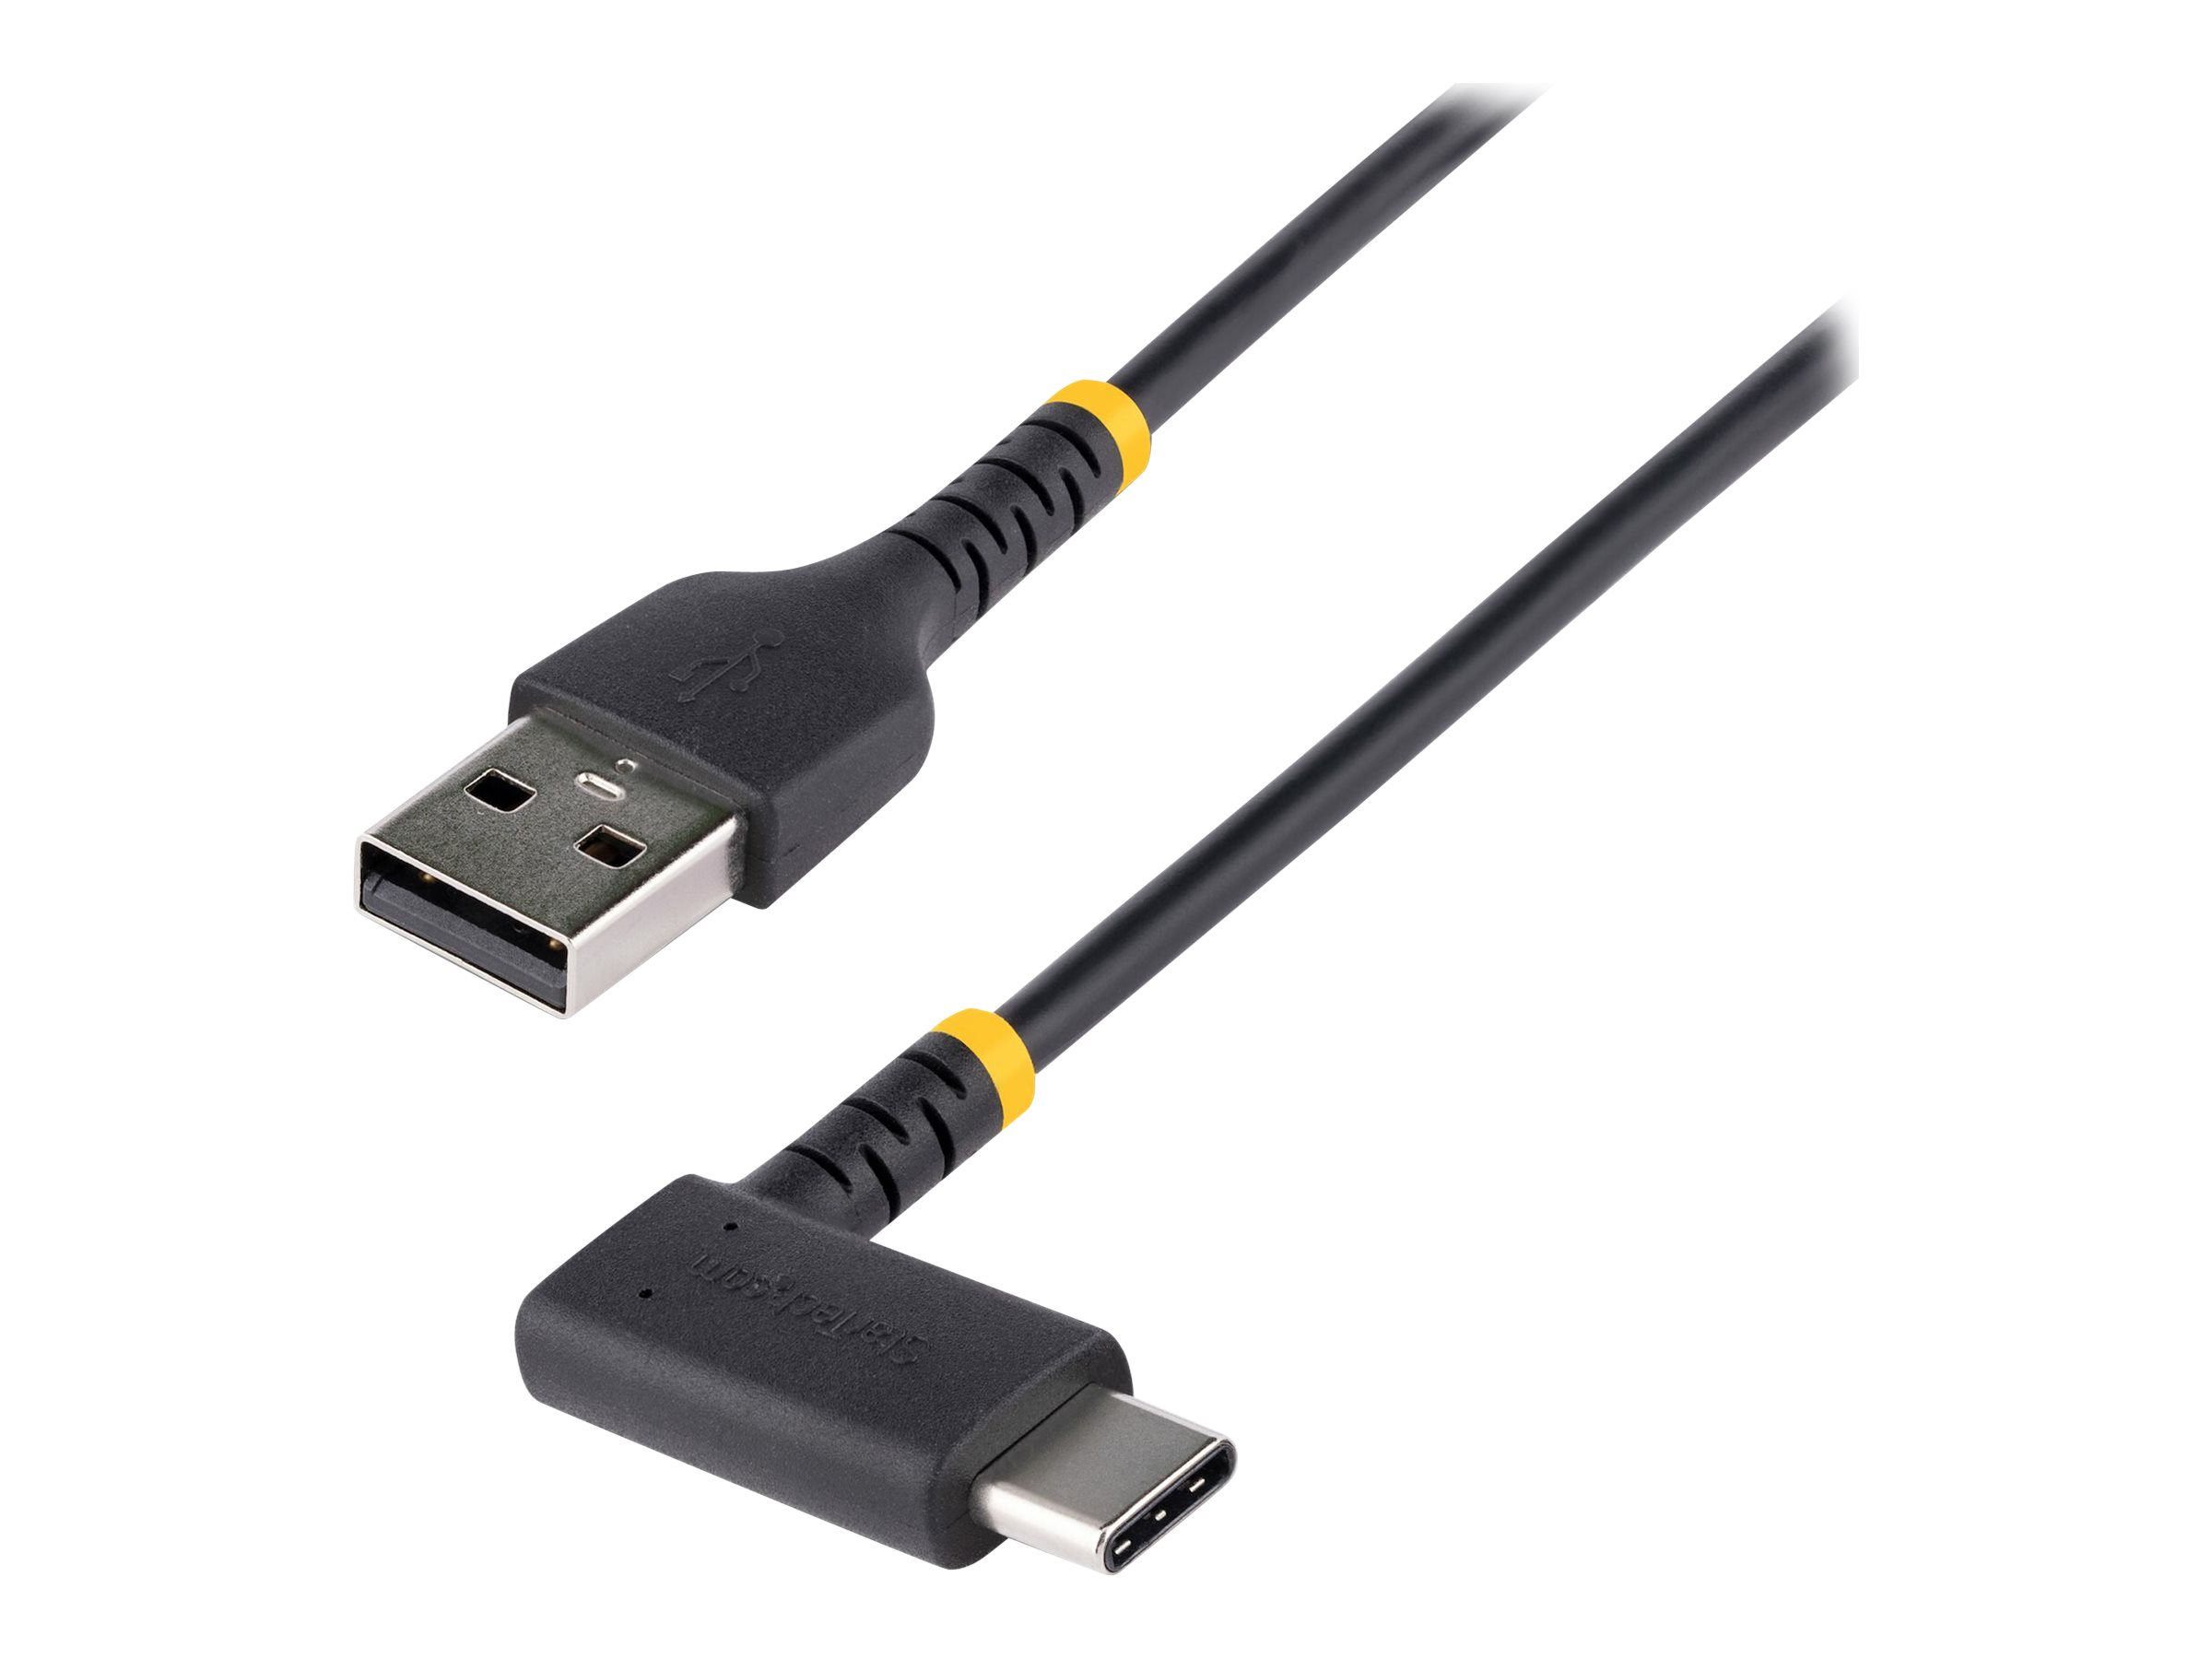 Câble de données de chargeur rapide de type C, câble plat USB 3A